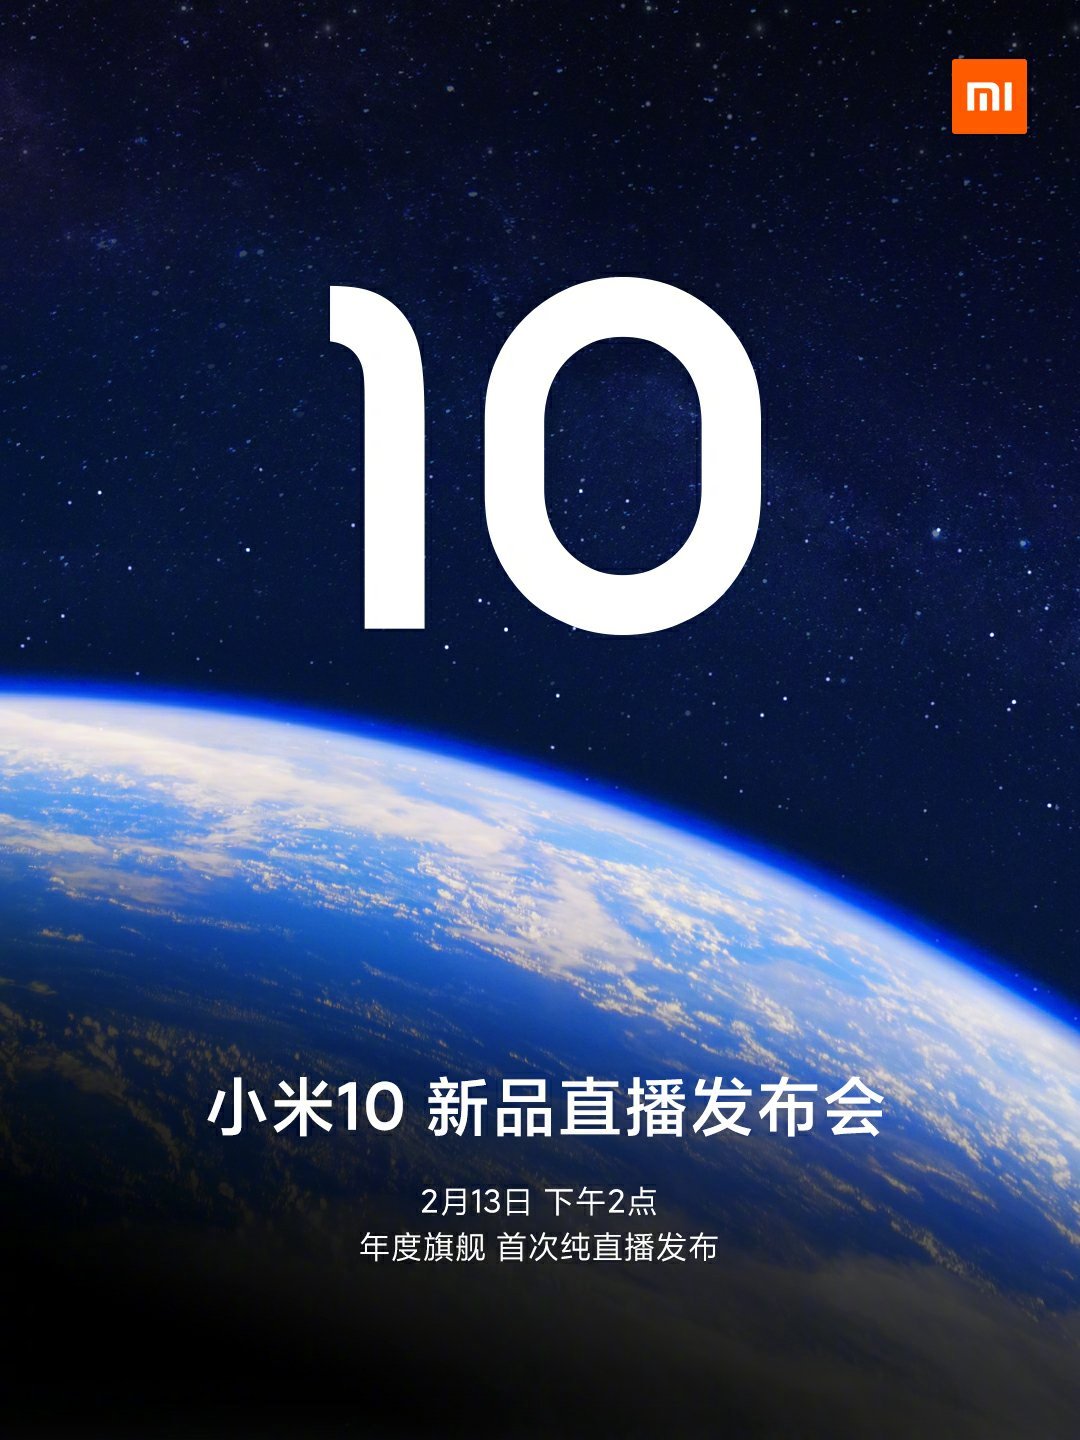 Xiaomi Mi 10 et Mi 10 Pro : date de sortie, prix, fiche technique&#8230; tout ce que l&rsquo;on sait sur les futurs smartphones premium